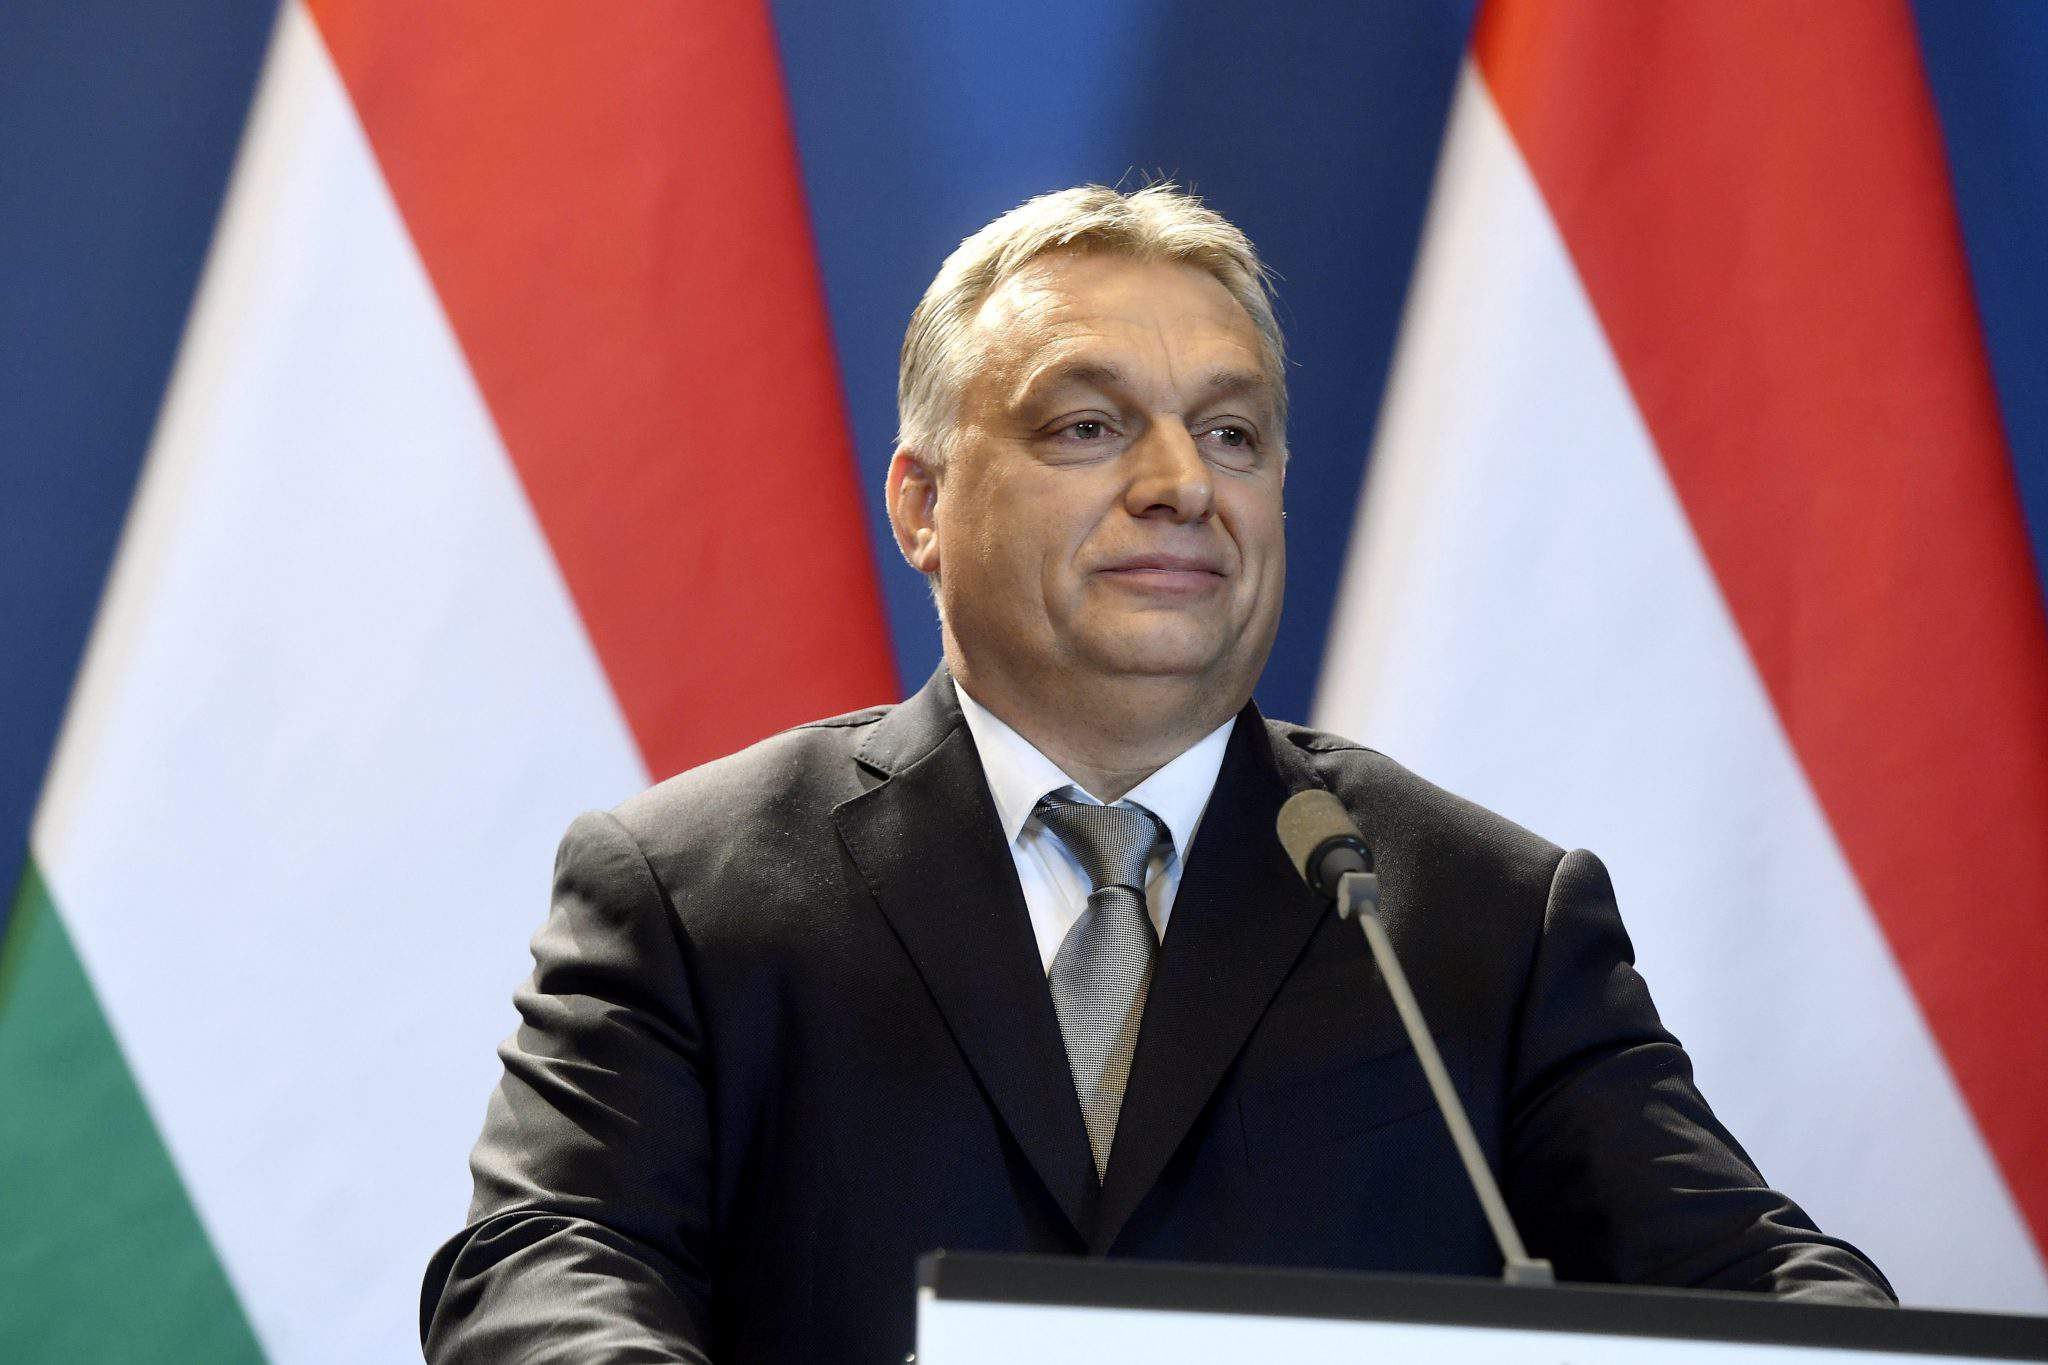 Der Sieg von Fidesz könnte die ungarische Demokratie bedrohen